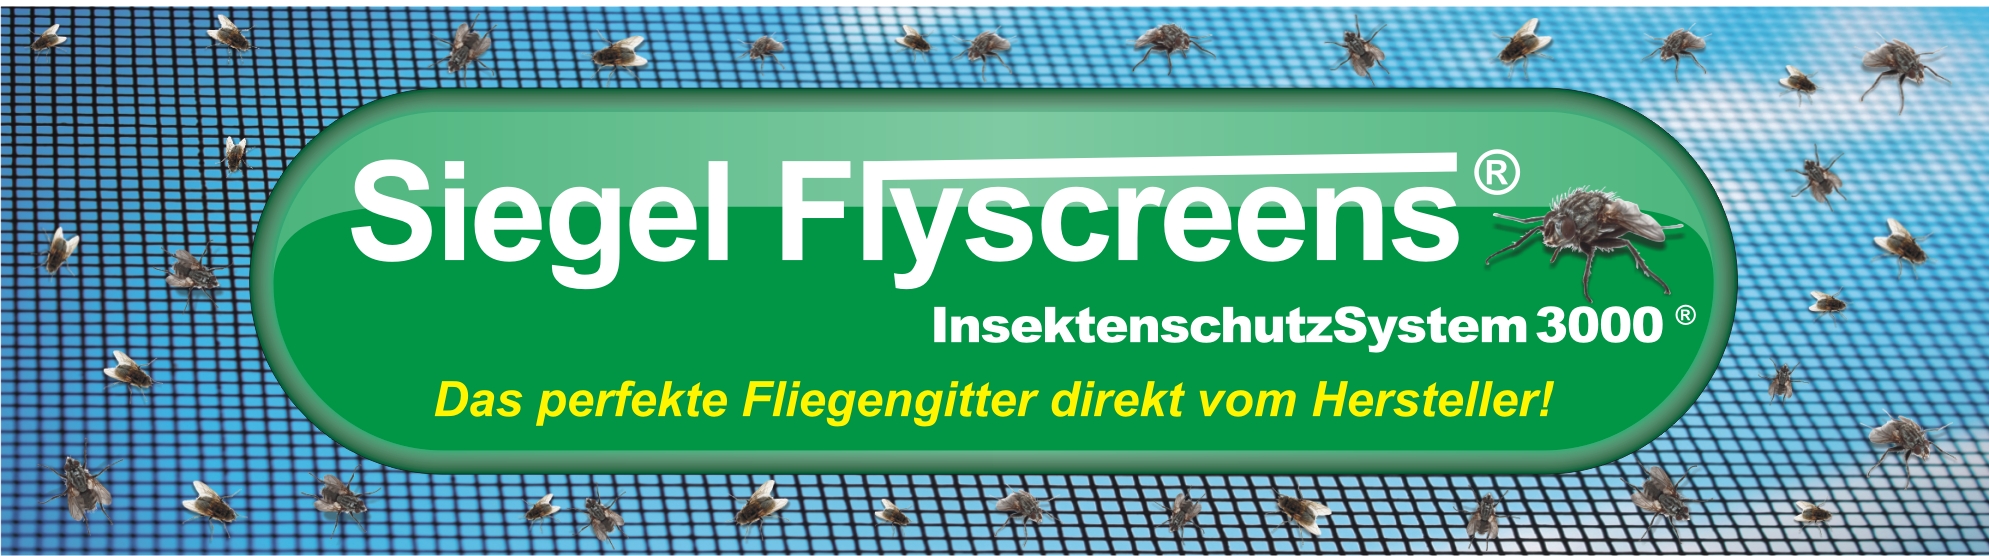 Das einzigartige Fliegengittersystem von Siegel Flyscreens